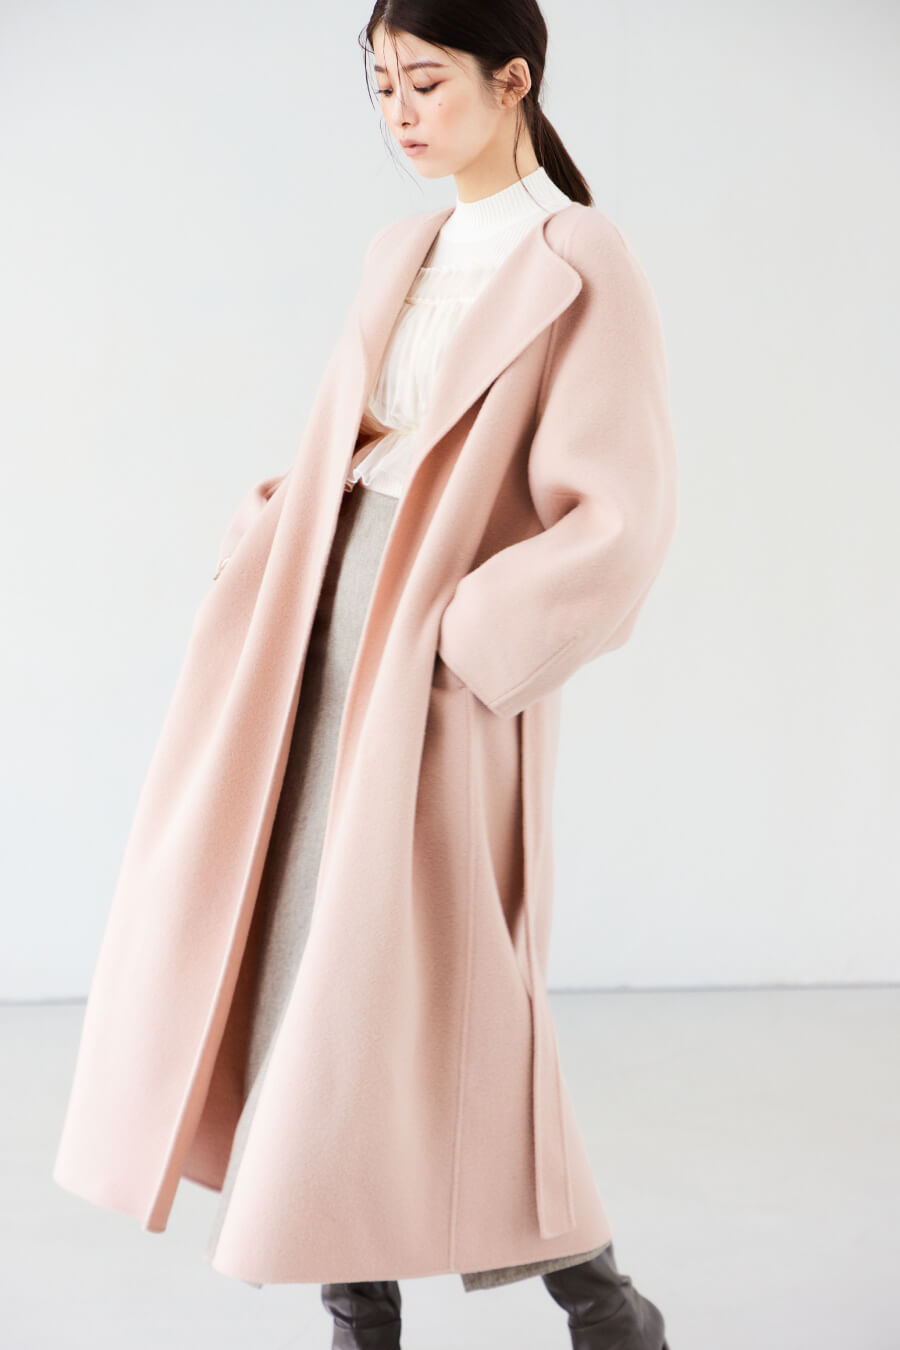 ライトピンクのコート・アイボリーのニット・ベージュのパンツを履いた女性